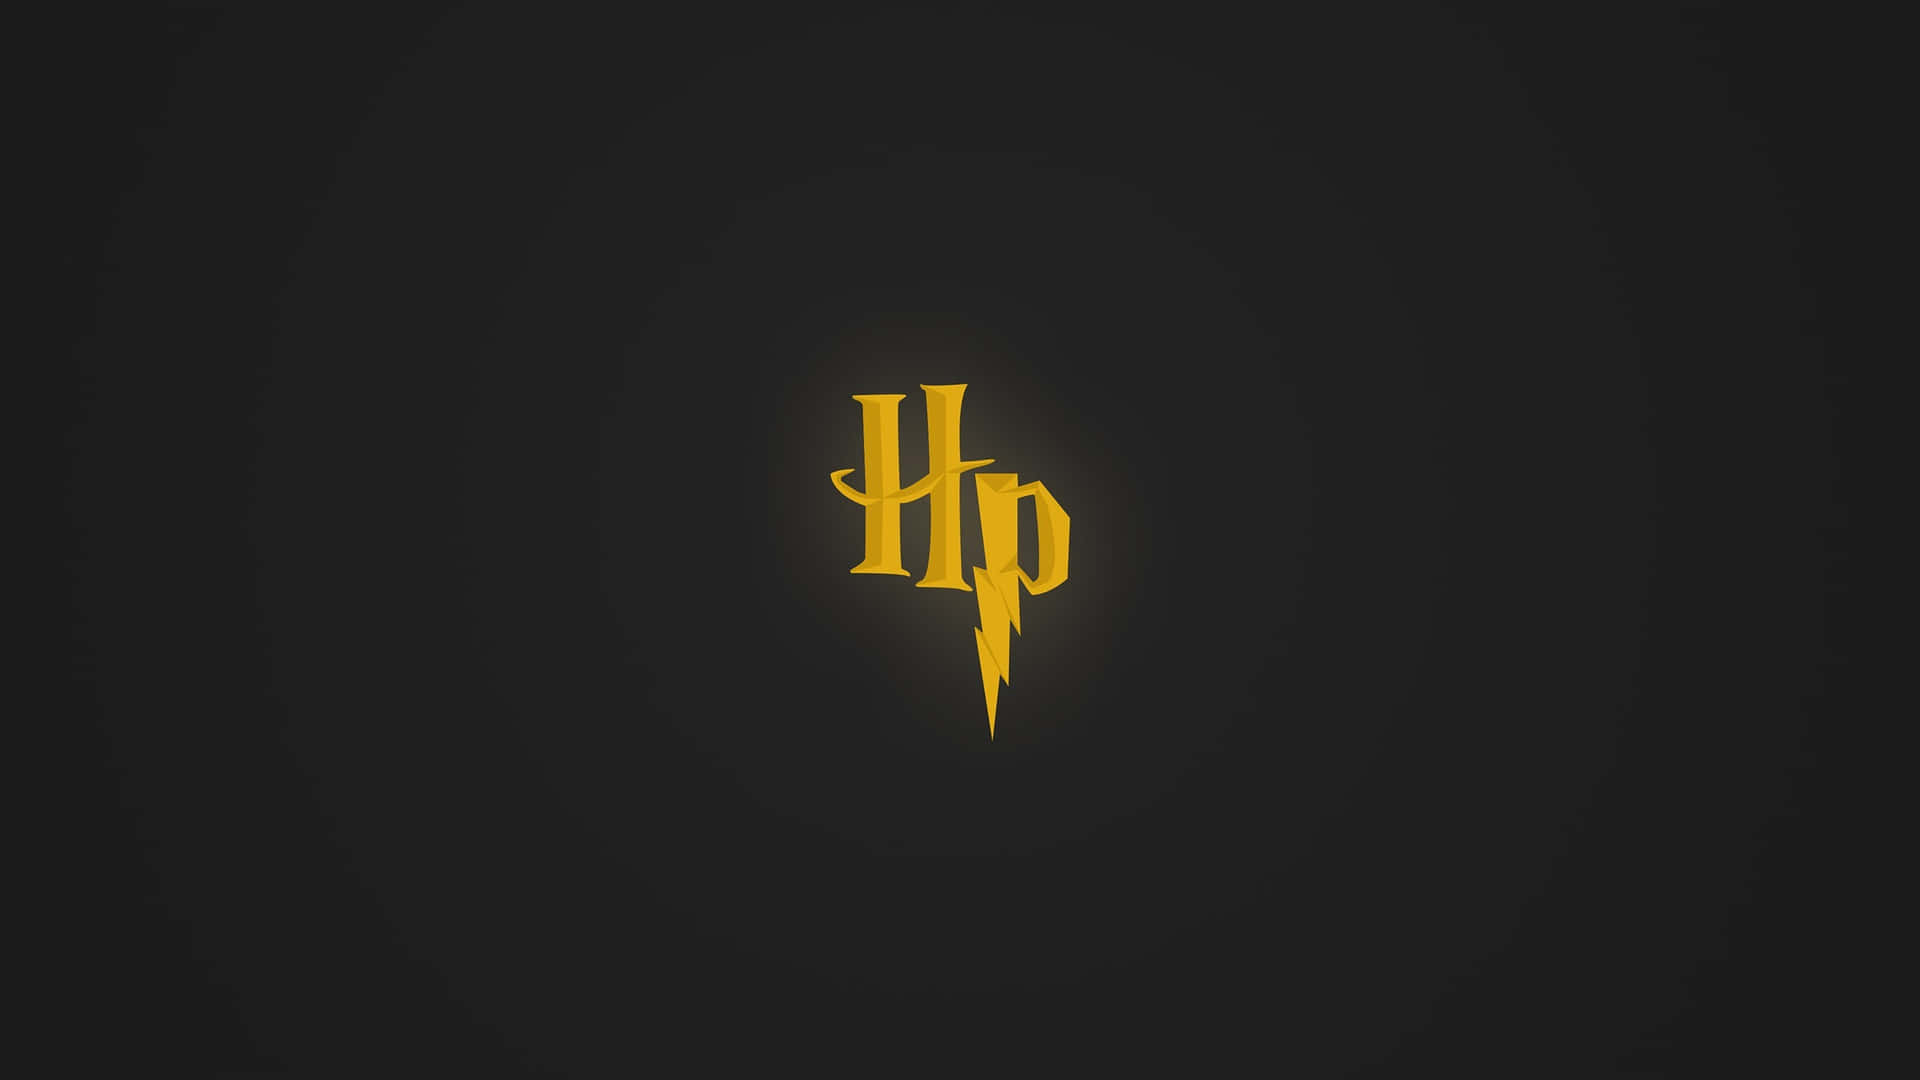 Minimalist Harry Potter Lightning Bolt Logo Wallpaper